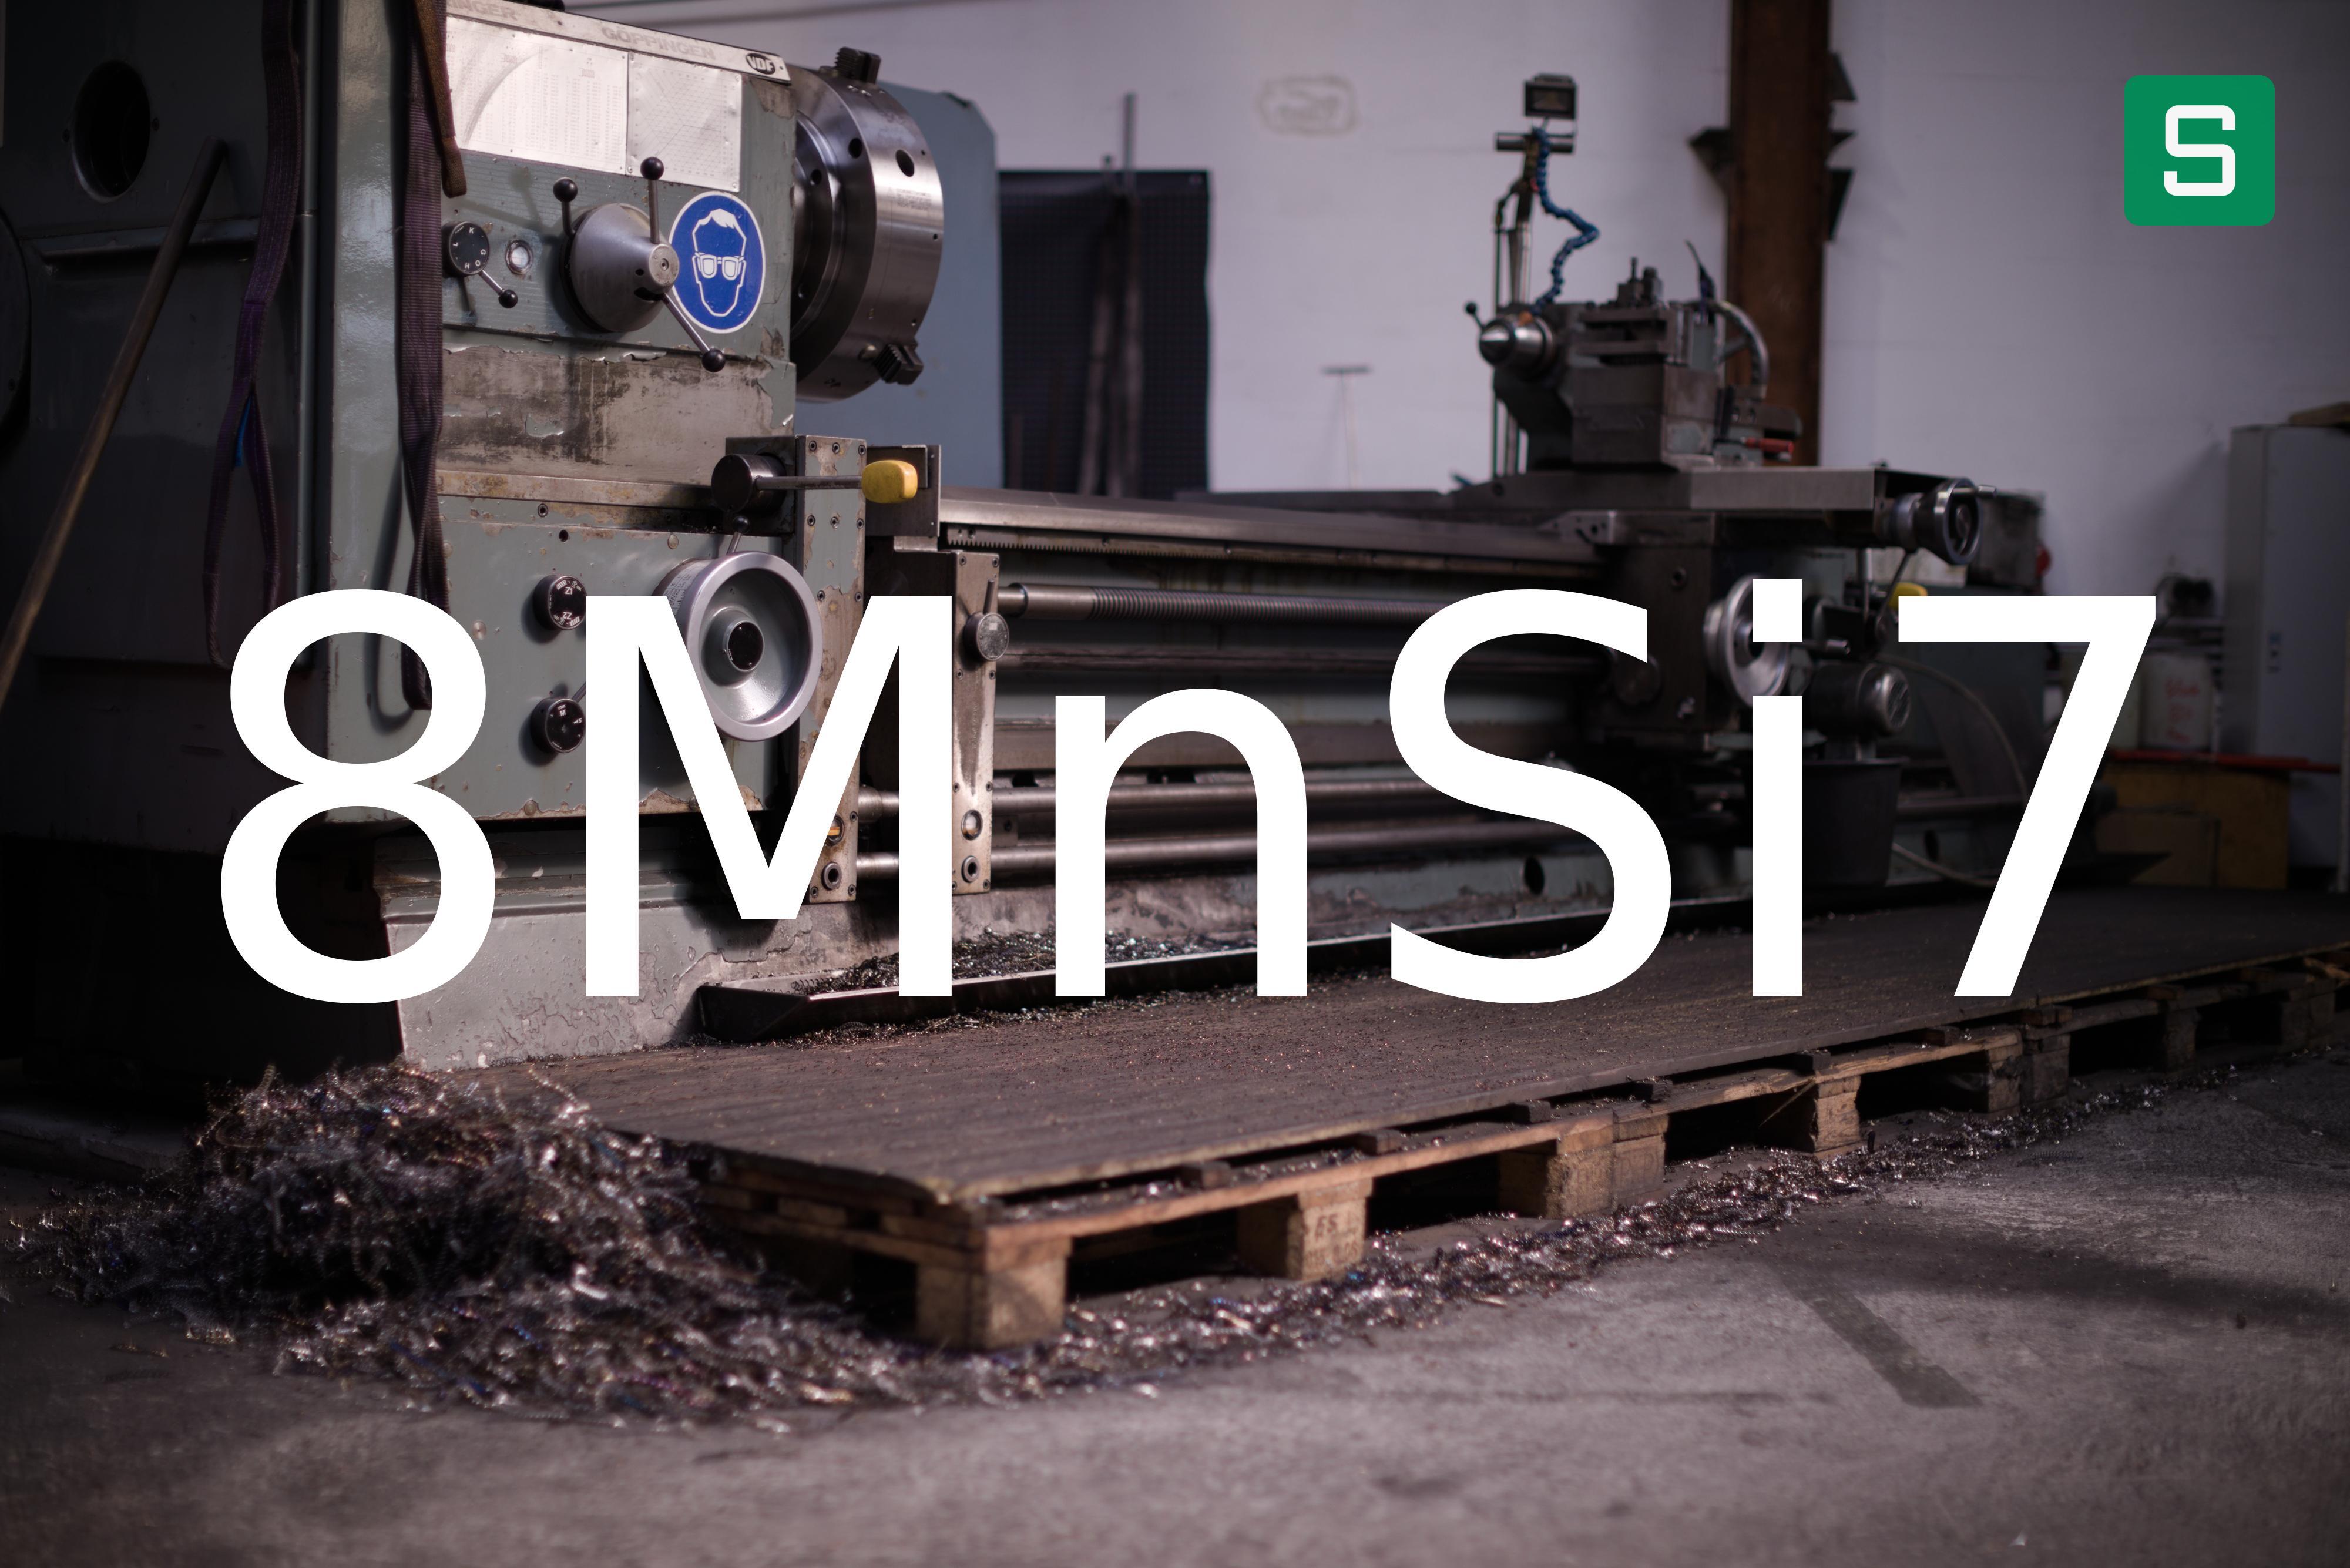 Steel Material: 8MnSi7